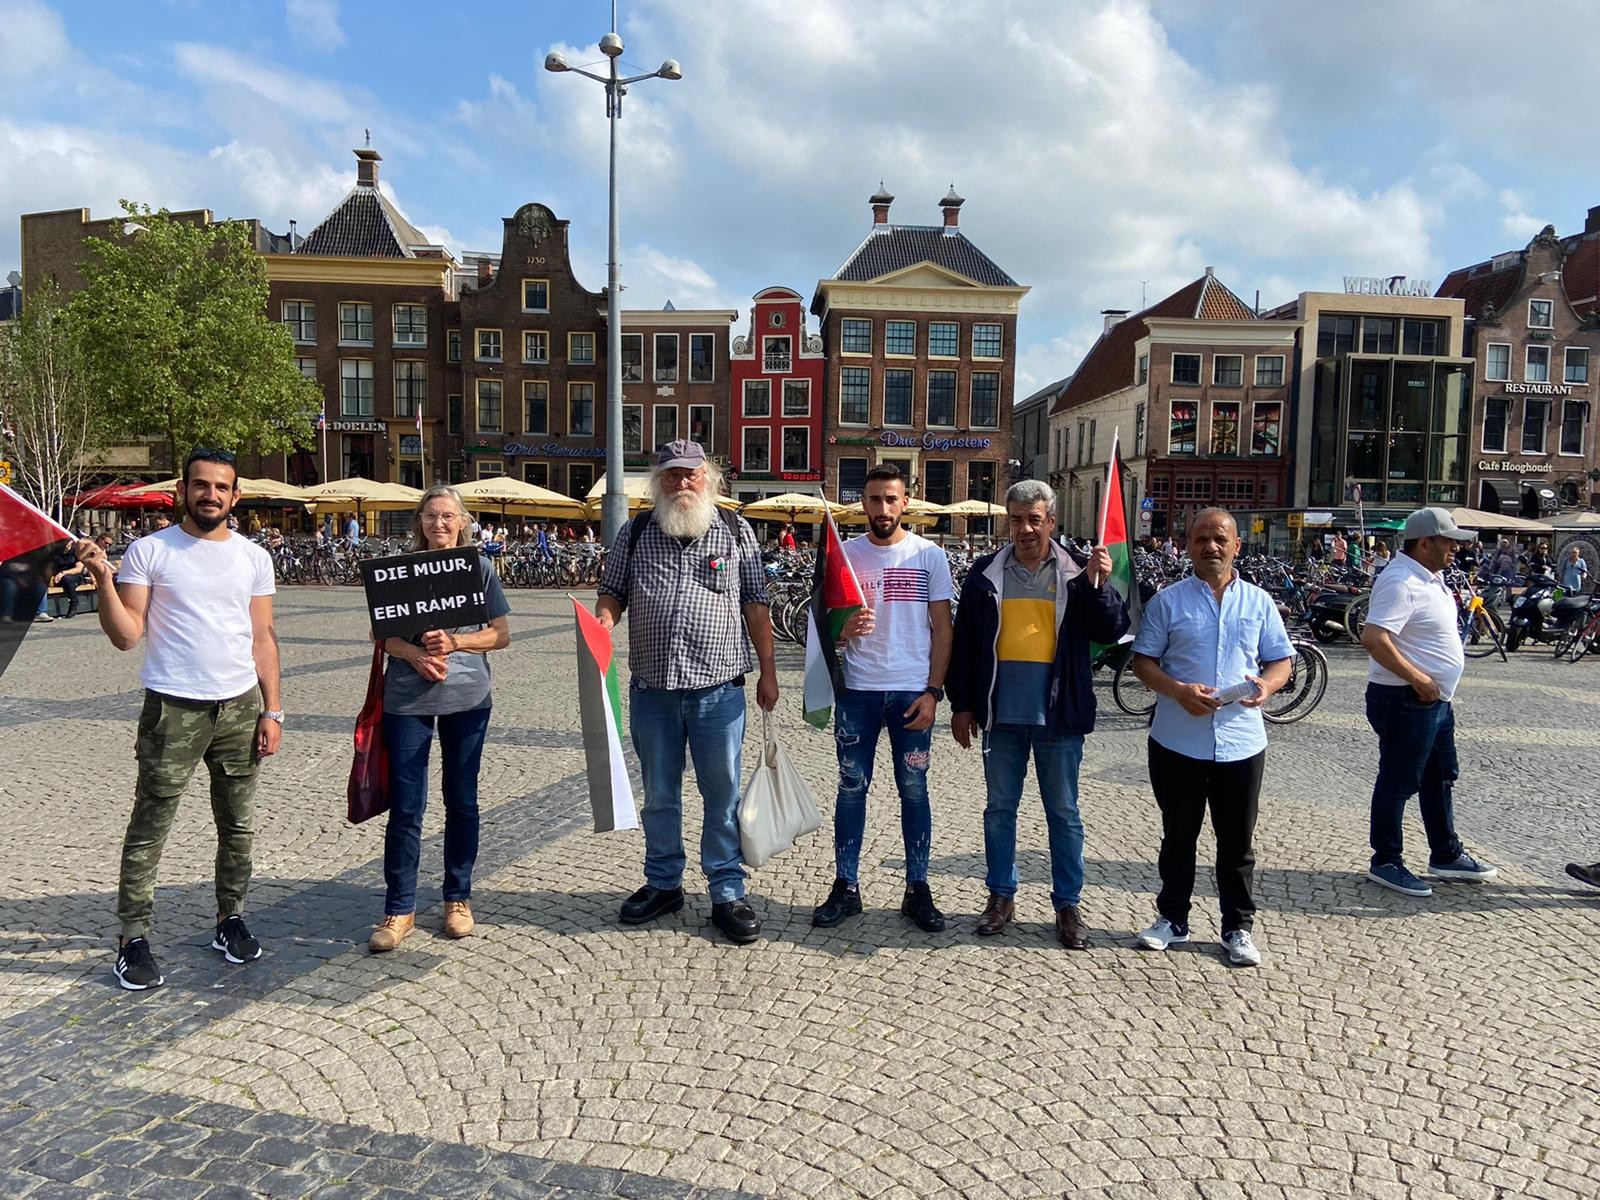 وقفة تضامنية مع الشعب الفلسطيني ومناهض لجدار الفصل العنصري في مدينة (خرونغن) الهولندية